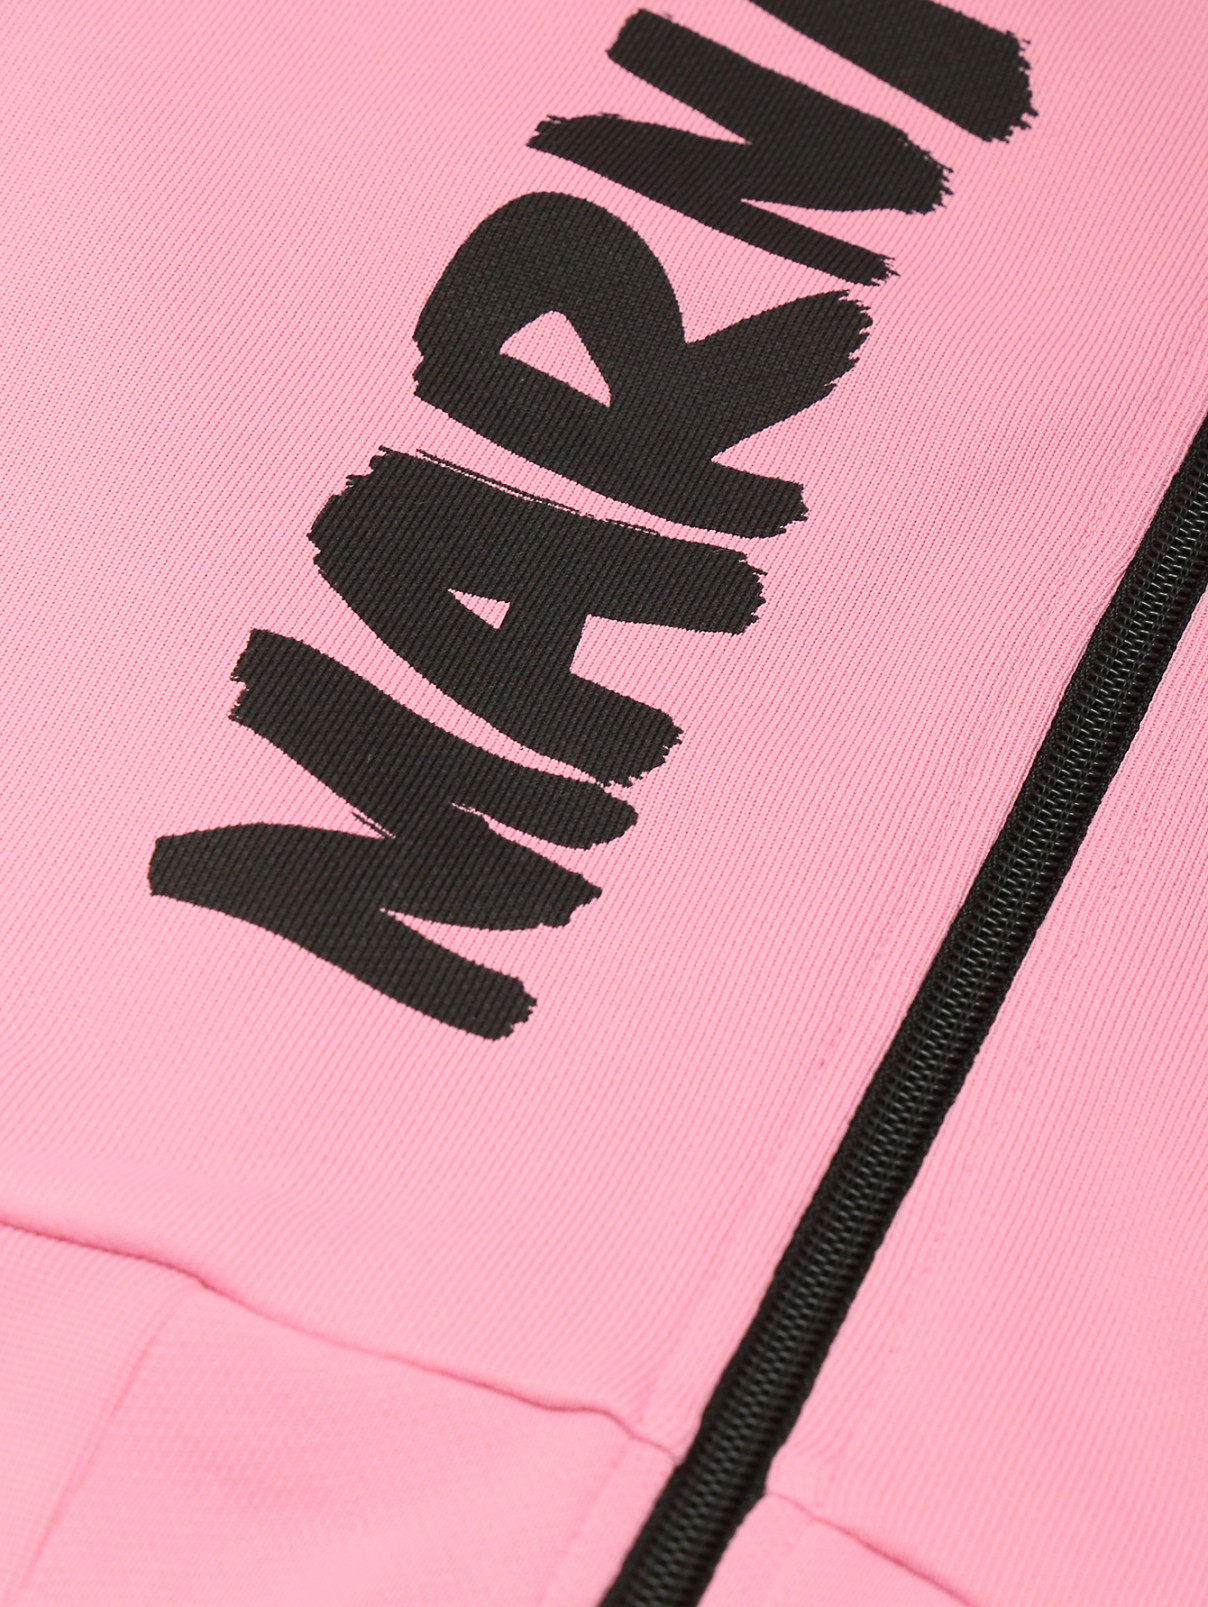 Толстовка с принтом и карманами Marni  –  Деталь  – Цвет:  Розовый